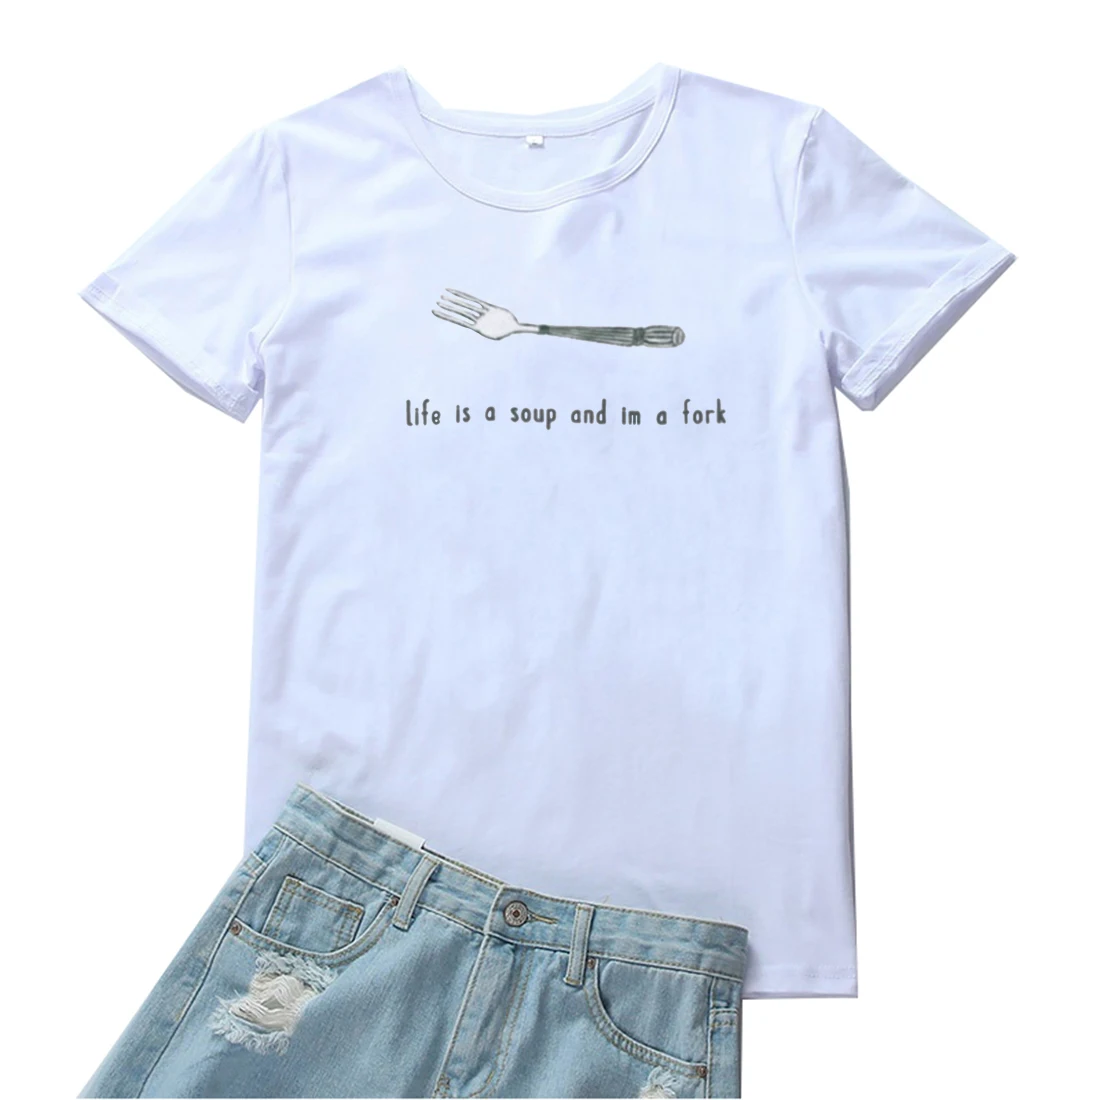 

Женская футболка с забавным рисунком из сериала «Жизнь это суп и я вилка»